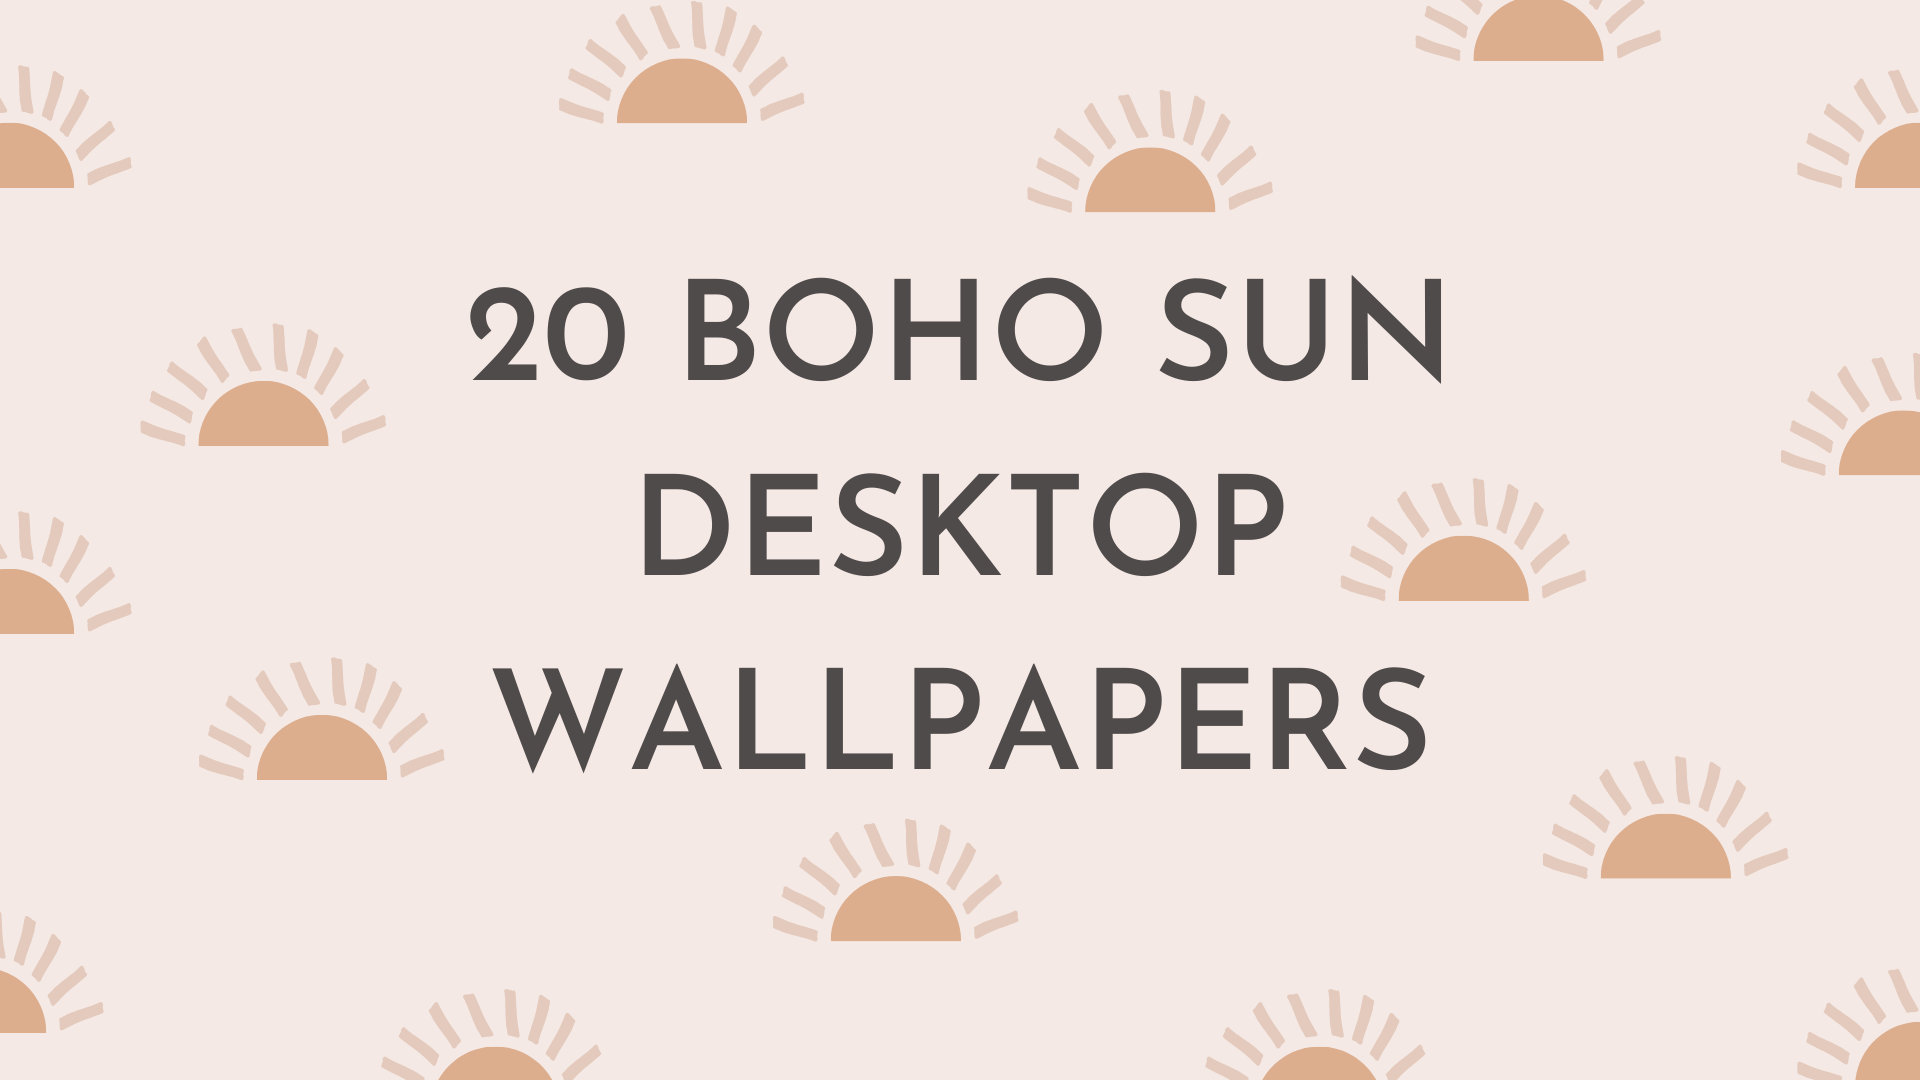 Tải về ngay bộ sưu tập 20 hình nền máy tính Boho Sun màu hồng để tận hưởng môi trường làm việc trong không gian đầy sức sống và tươi mới! Hình nền Boho Sun mang đến cho bạn cảm giác thư giãn và yên bình, giúp cho công việc trở nên dễ chịu hơn. Hãy tải ngay để trải nghiệm ngay nhé.